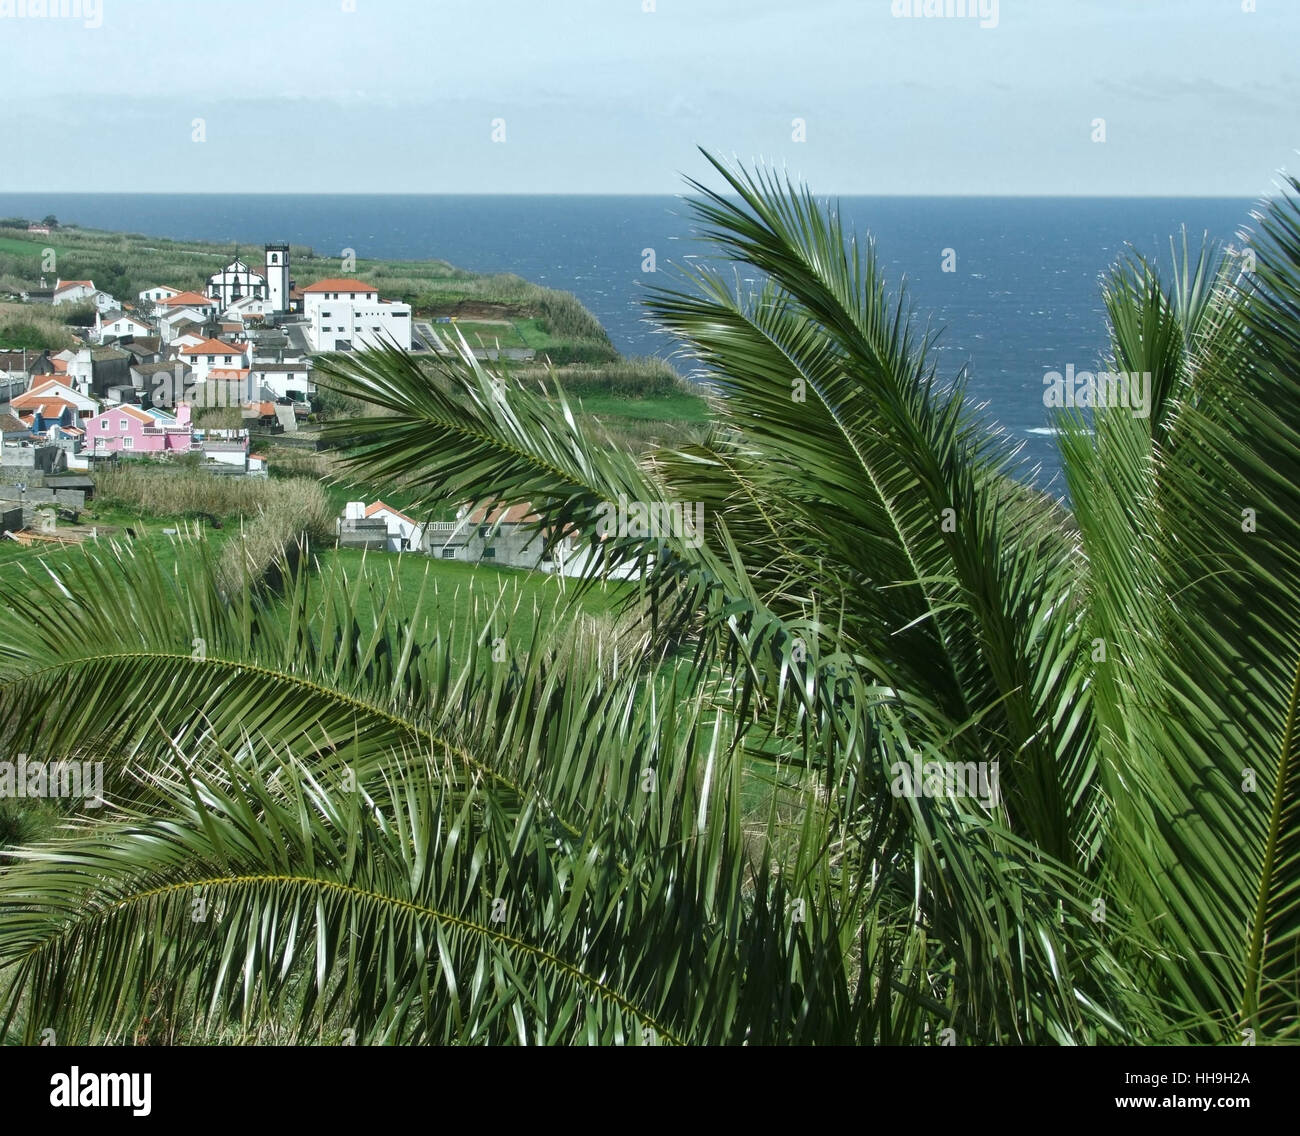 Paysage côtier à l'île de São Miguel, la plus grande île de l'archipel des Açores, un groupe d'îles volcanique situé au milieu de l'océan Atlantique Nord (Portugal) Banque D'Images